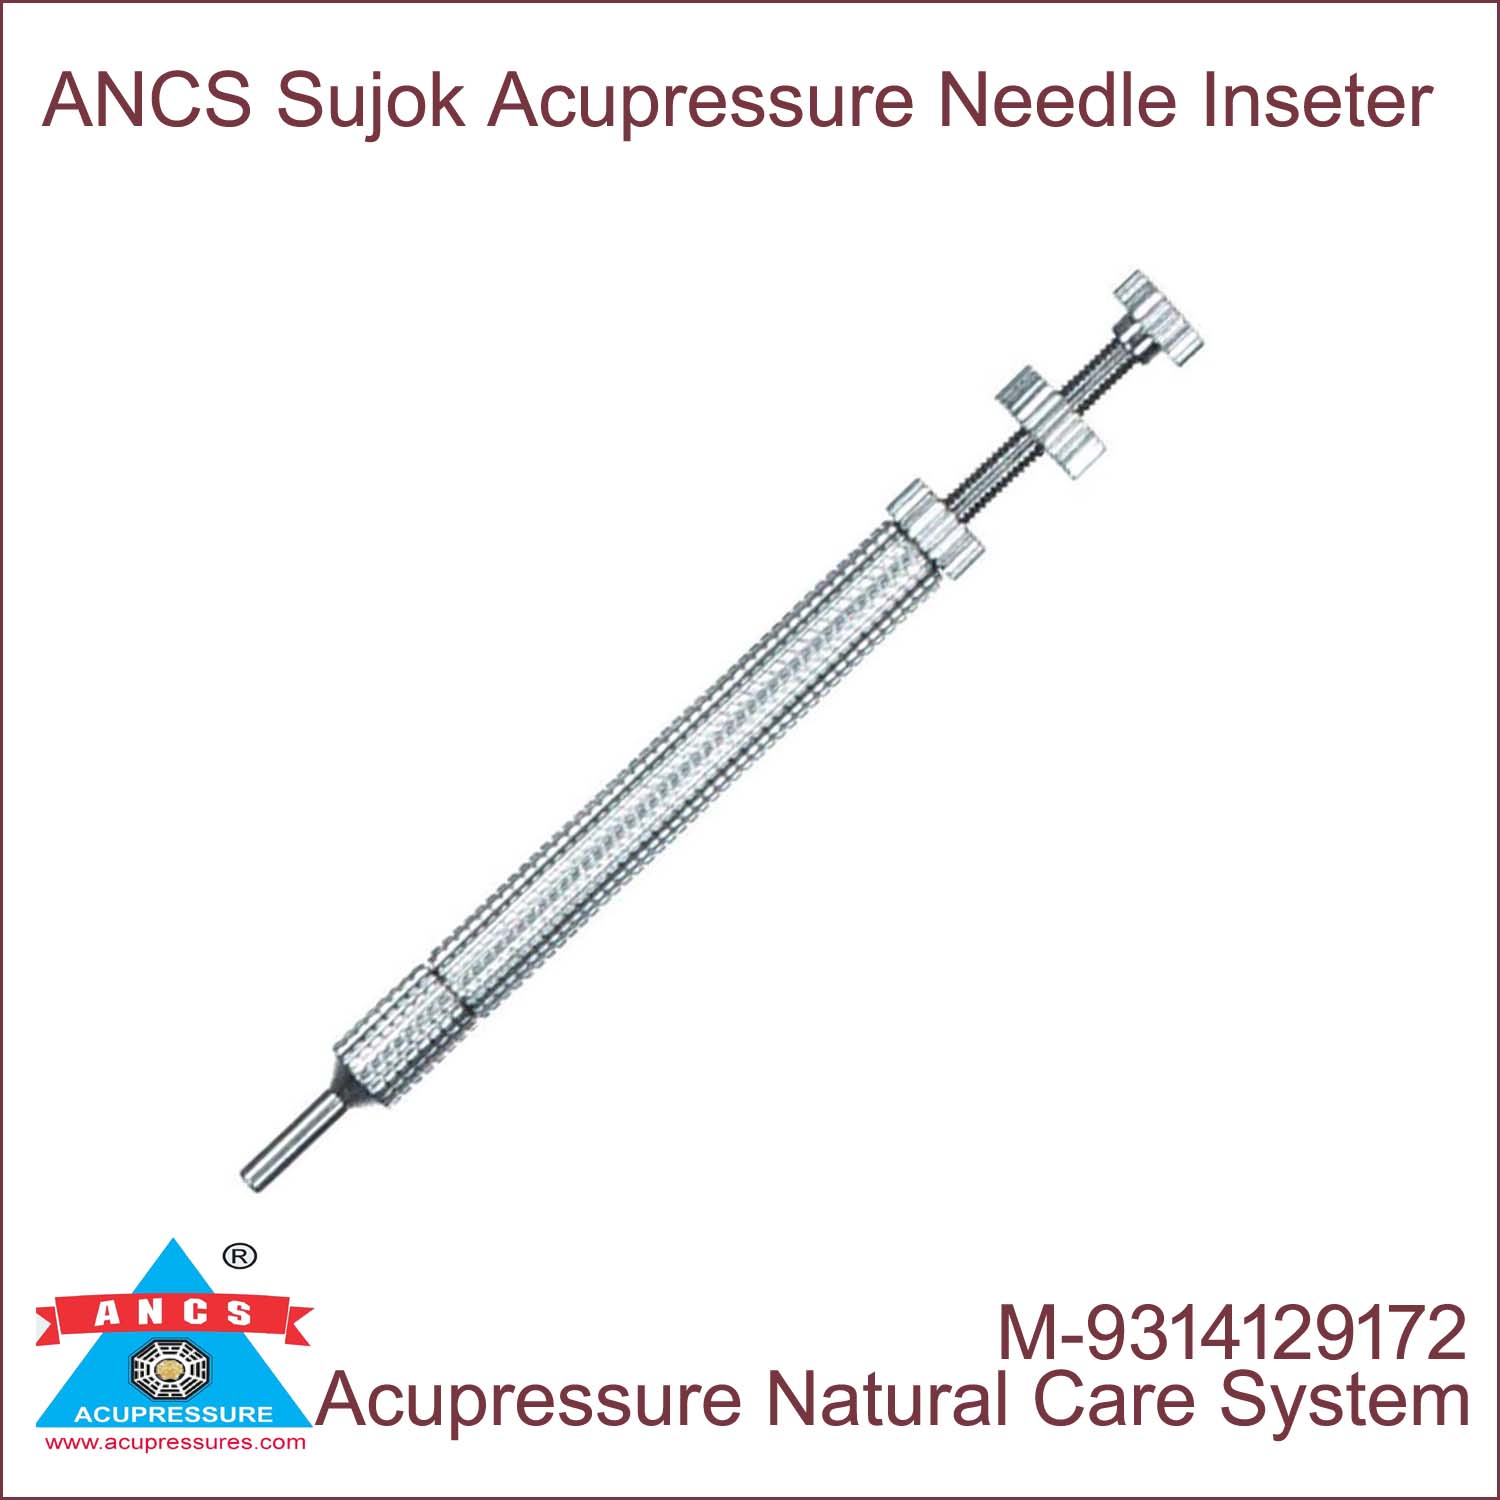 ANCS Sujok Needle Inserter - Six key 